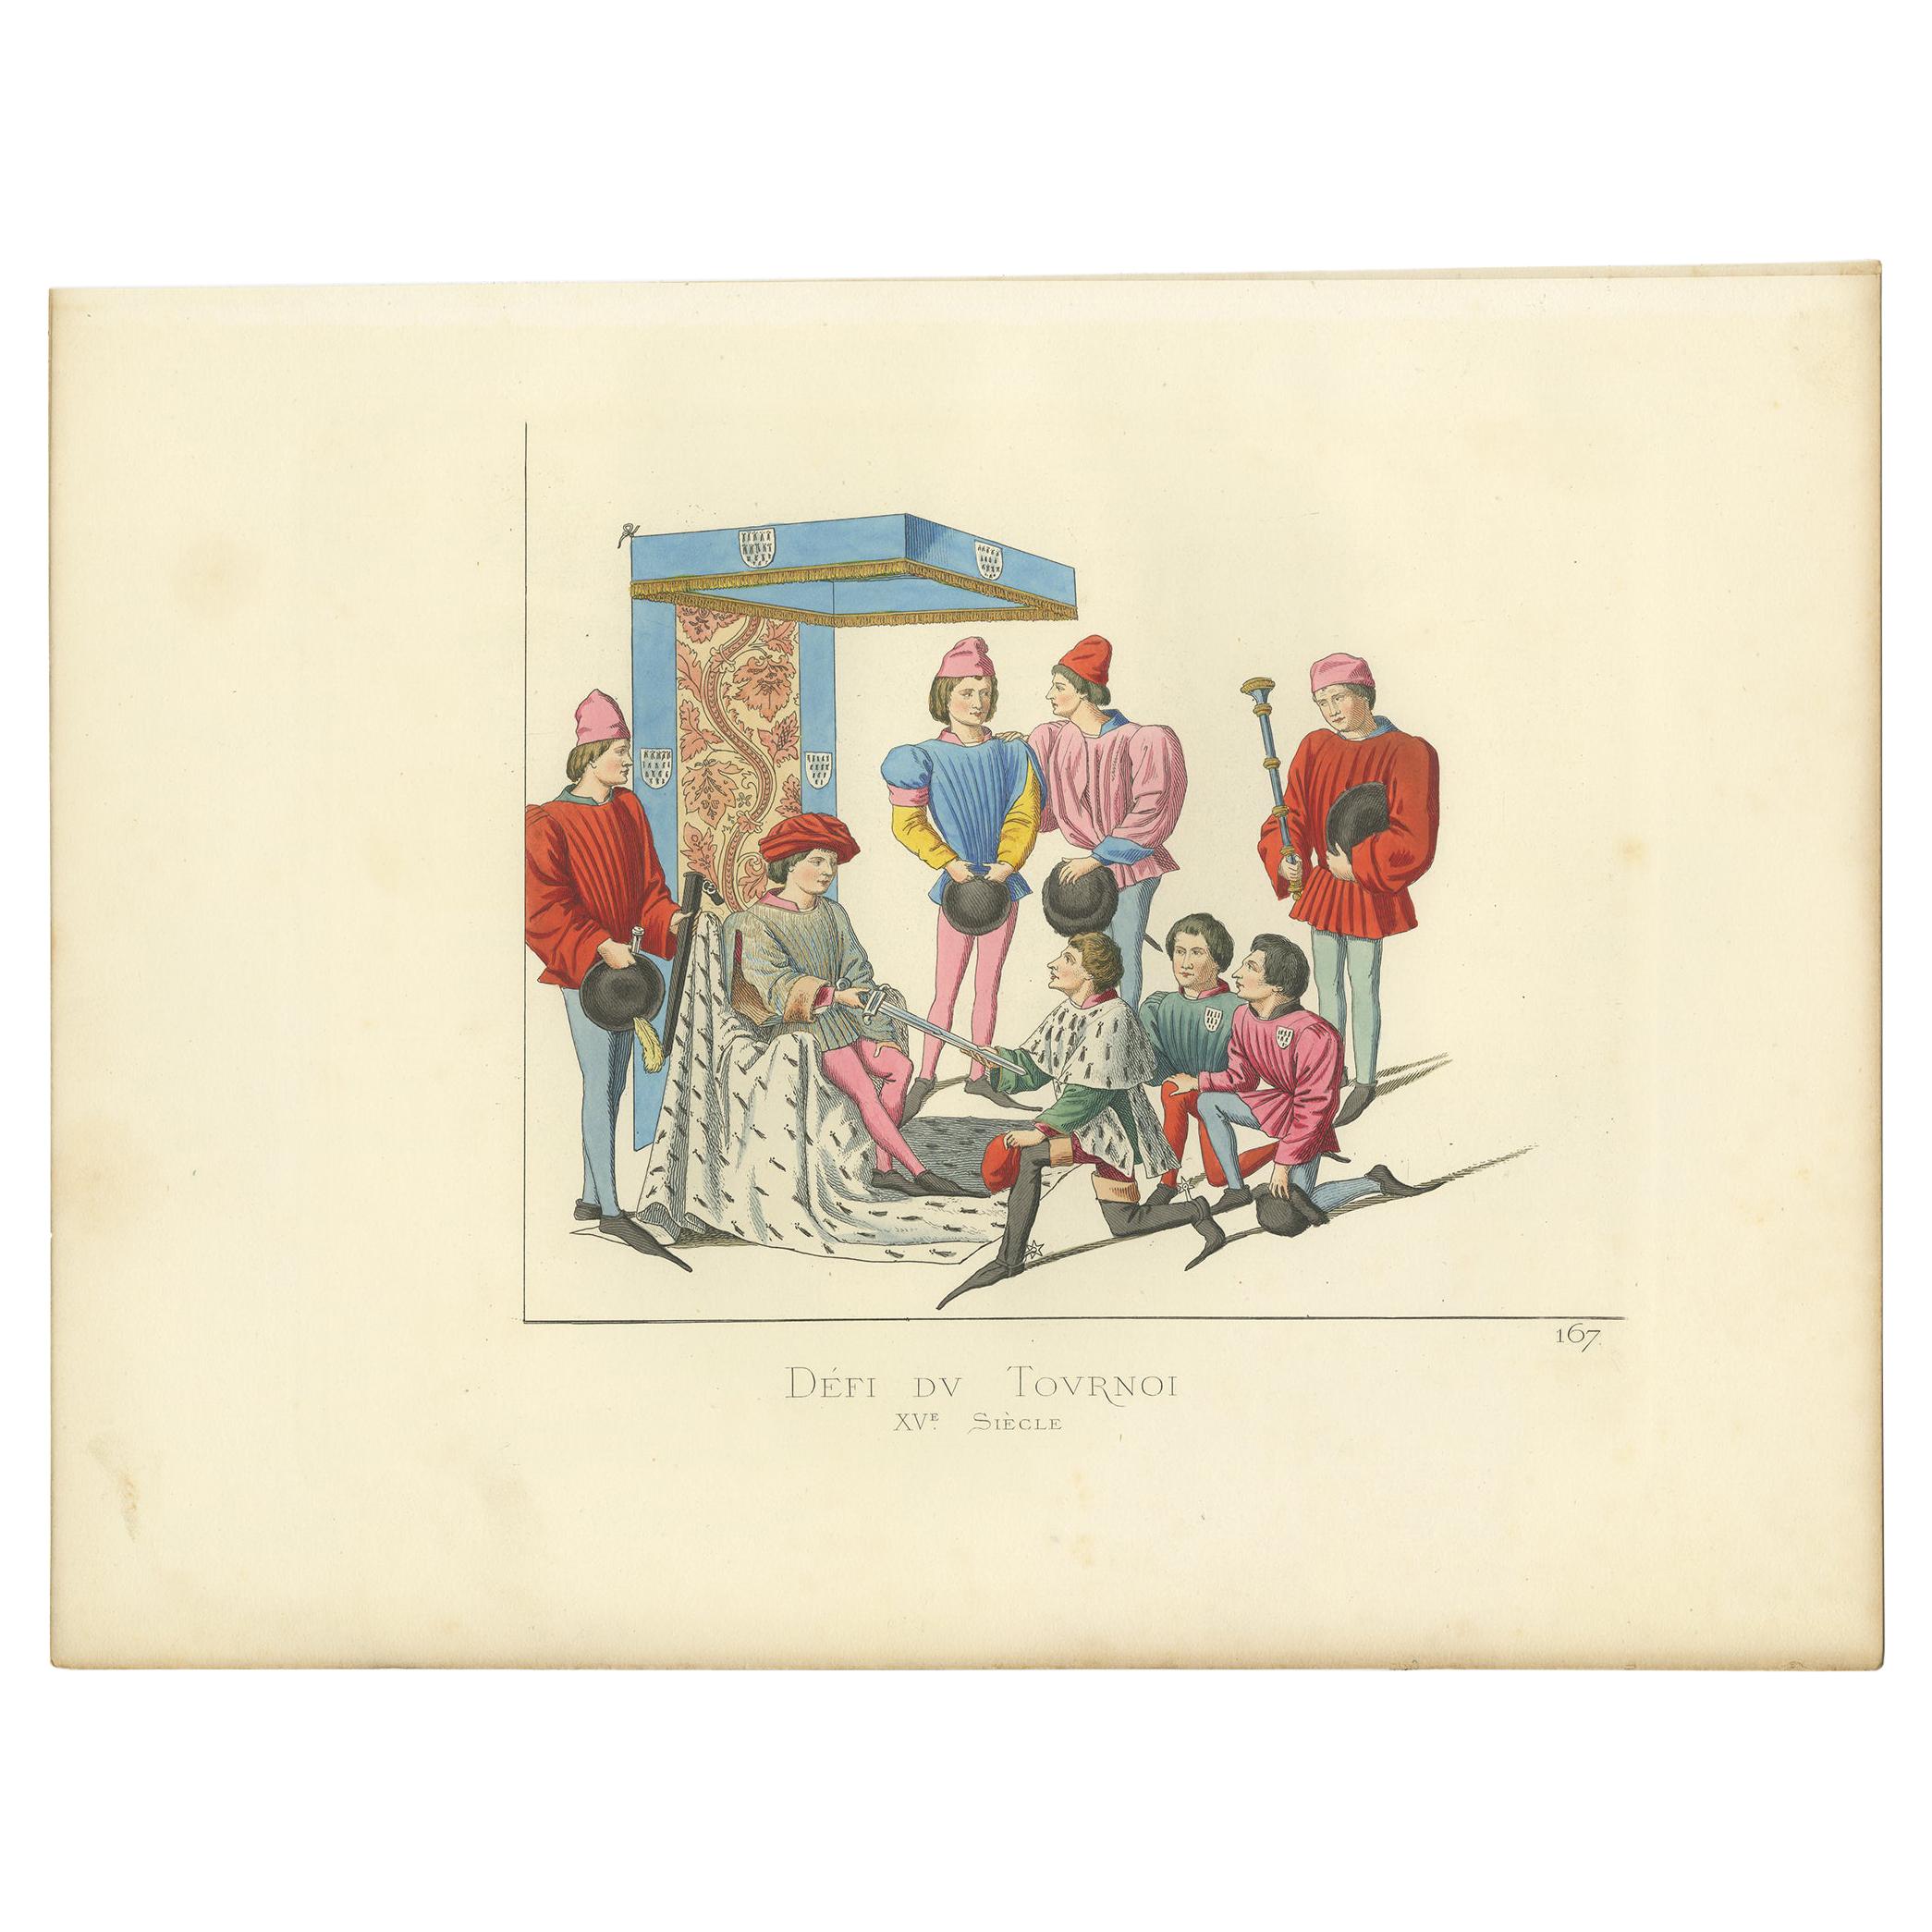 Antiker Druck eines Wettbewerbsaufenthalts, von Bonnard, 1860